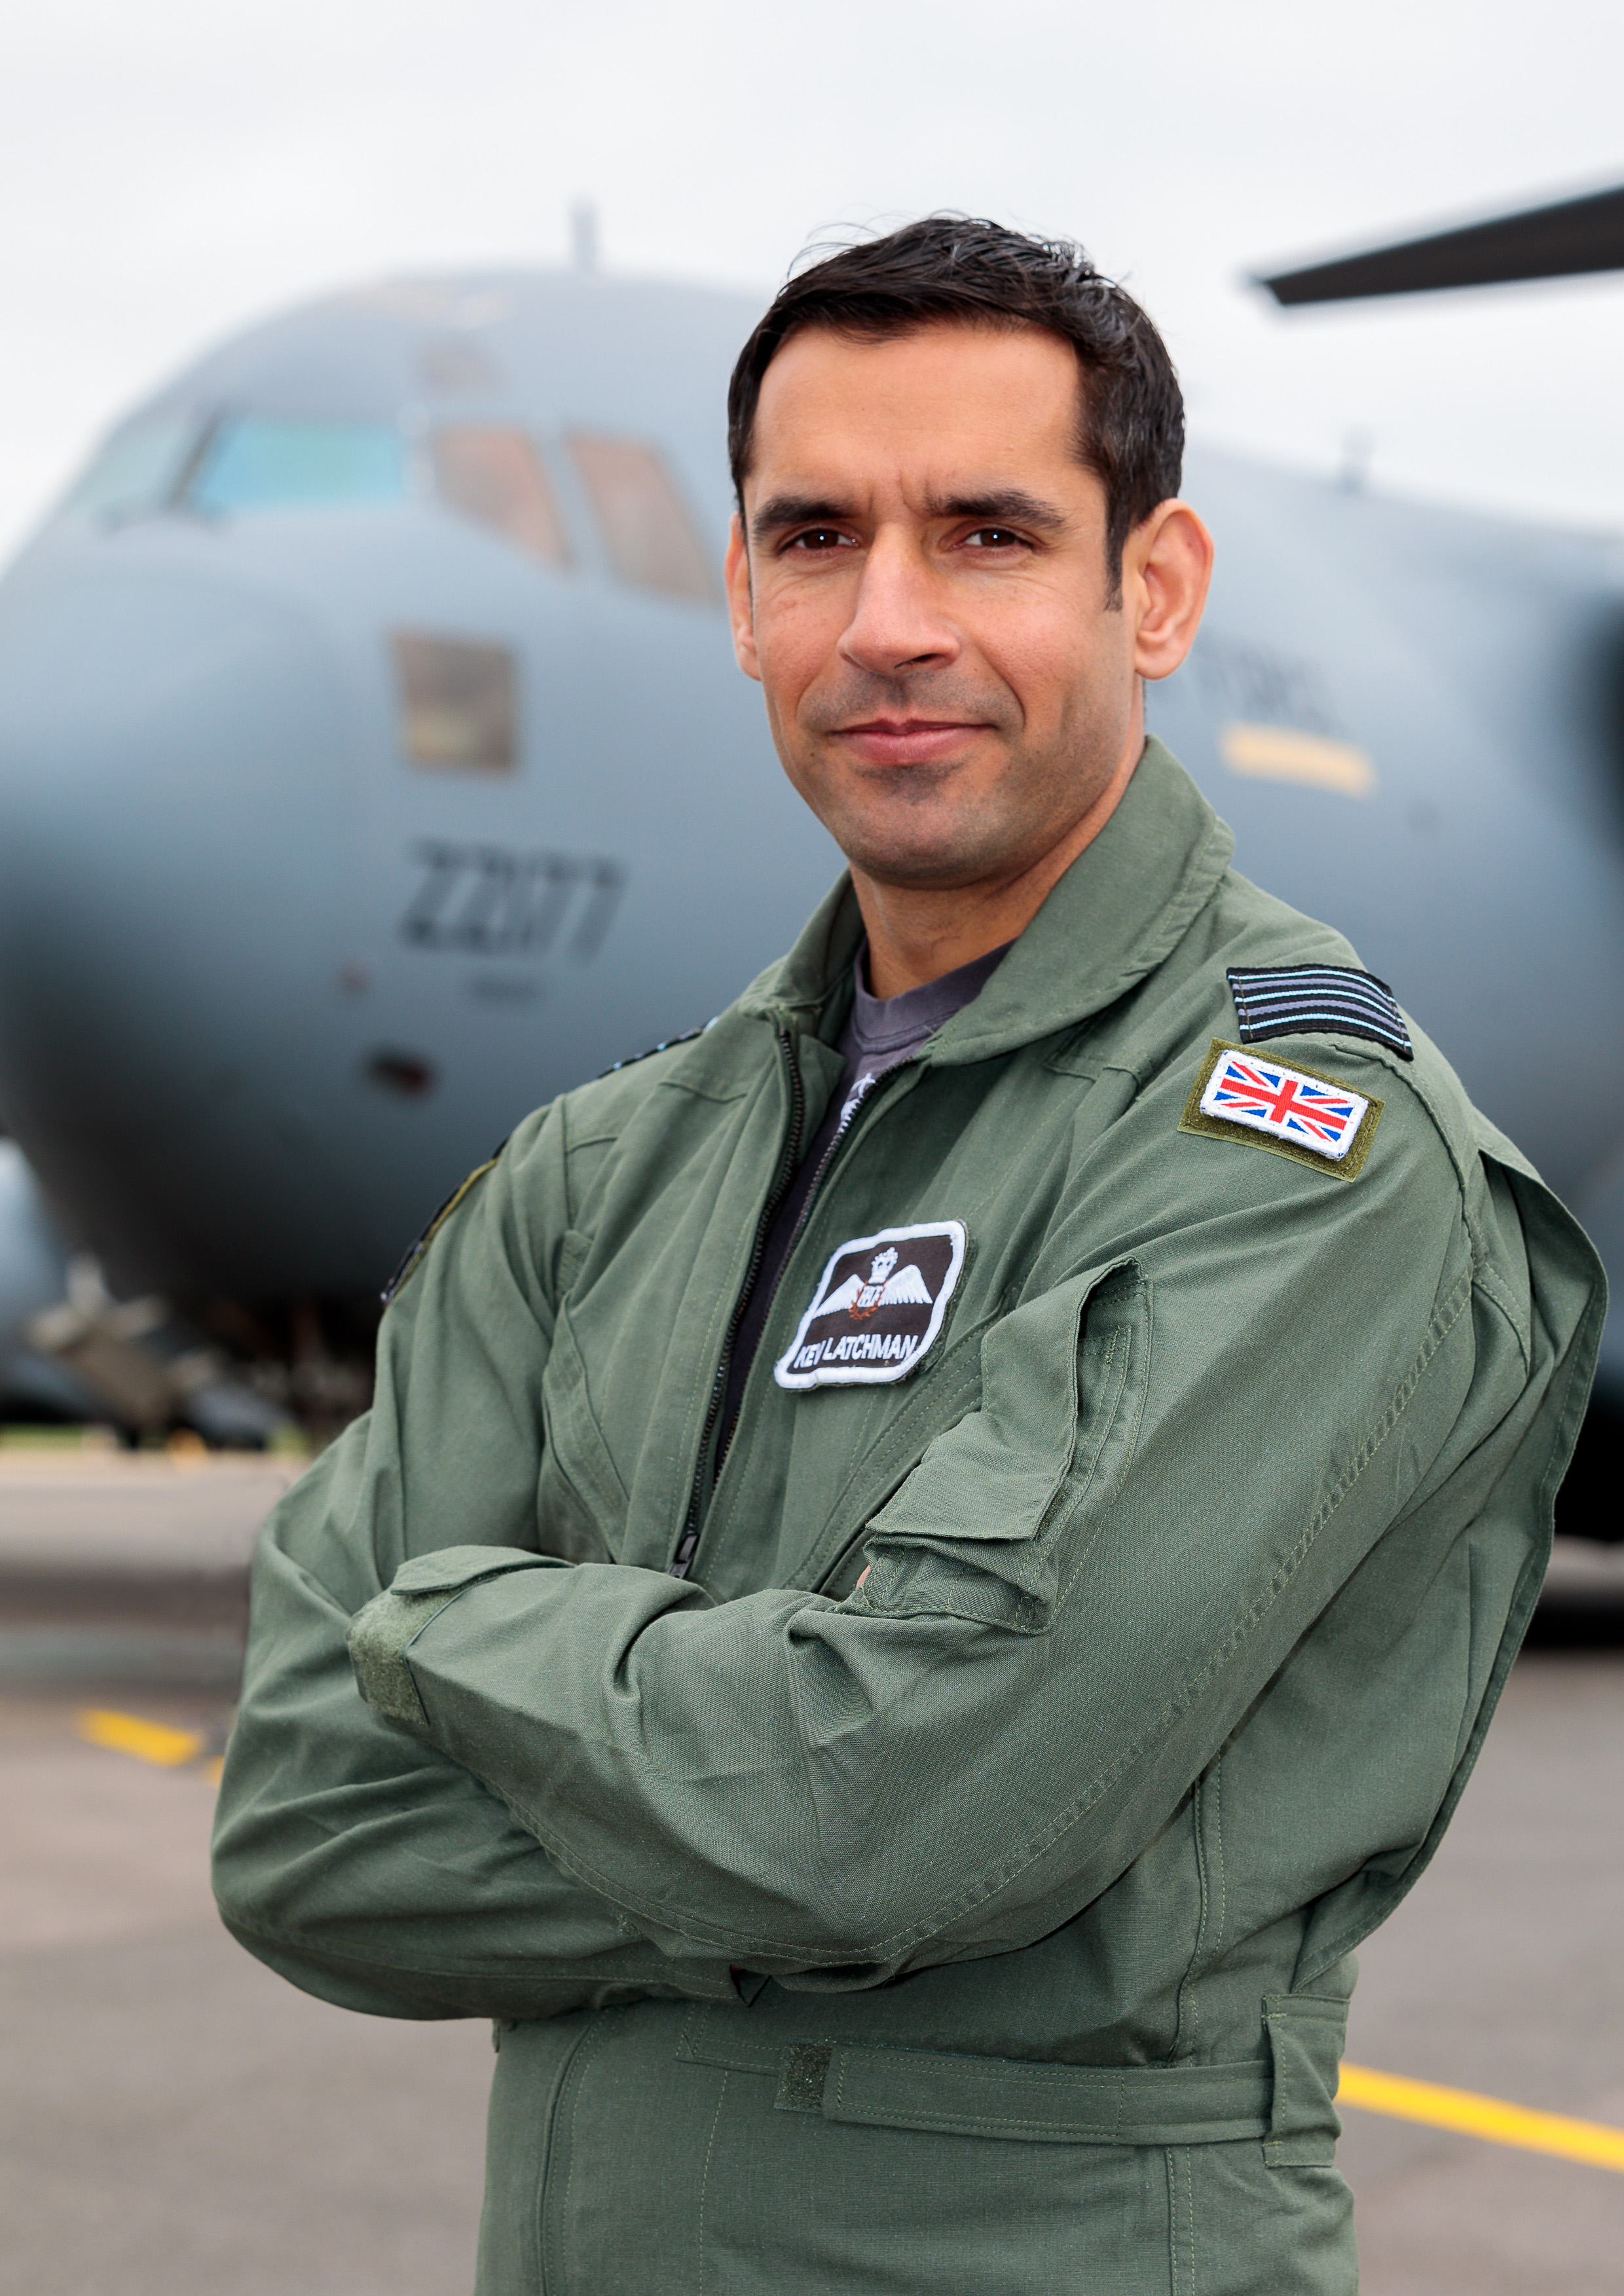 RAF Pilot stands by Atlas aircraft.